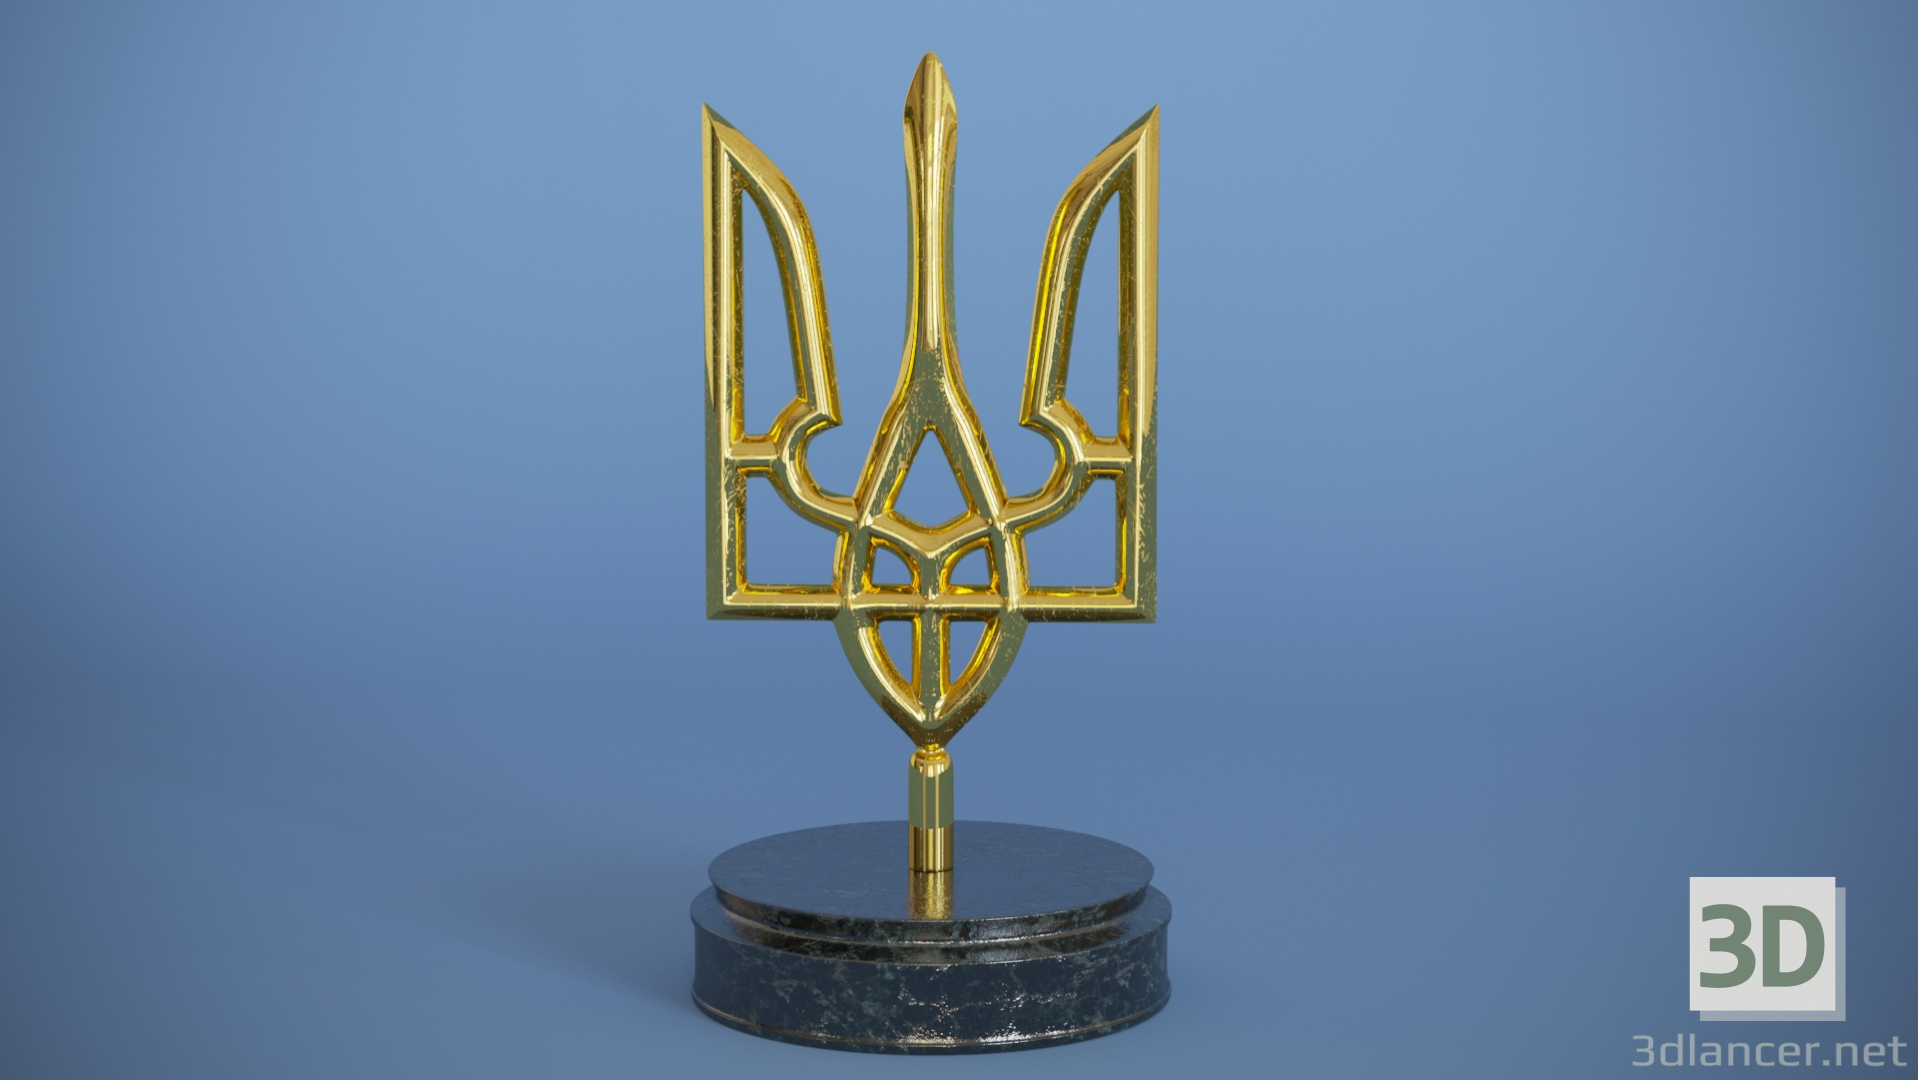 3d Emblem of Ukraine model buy - render